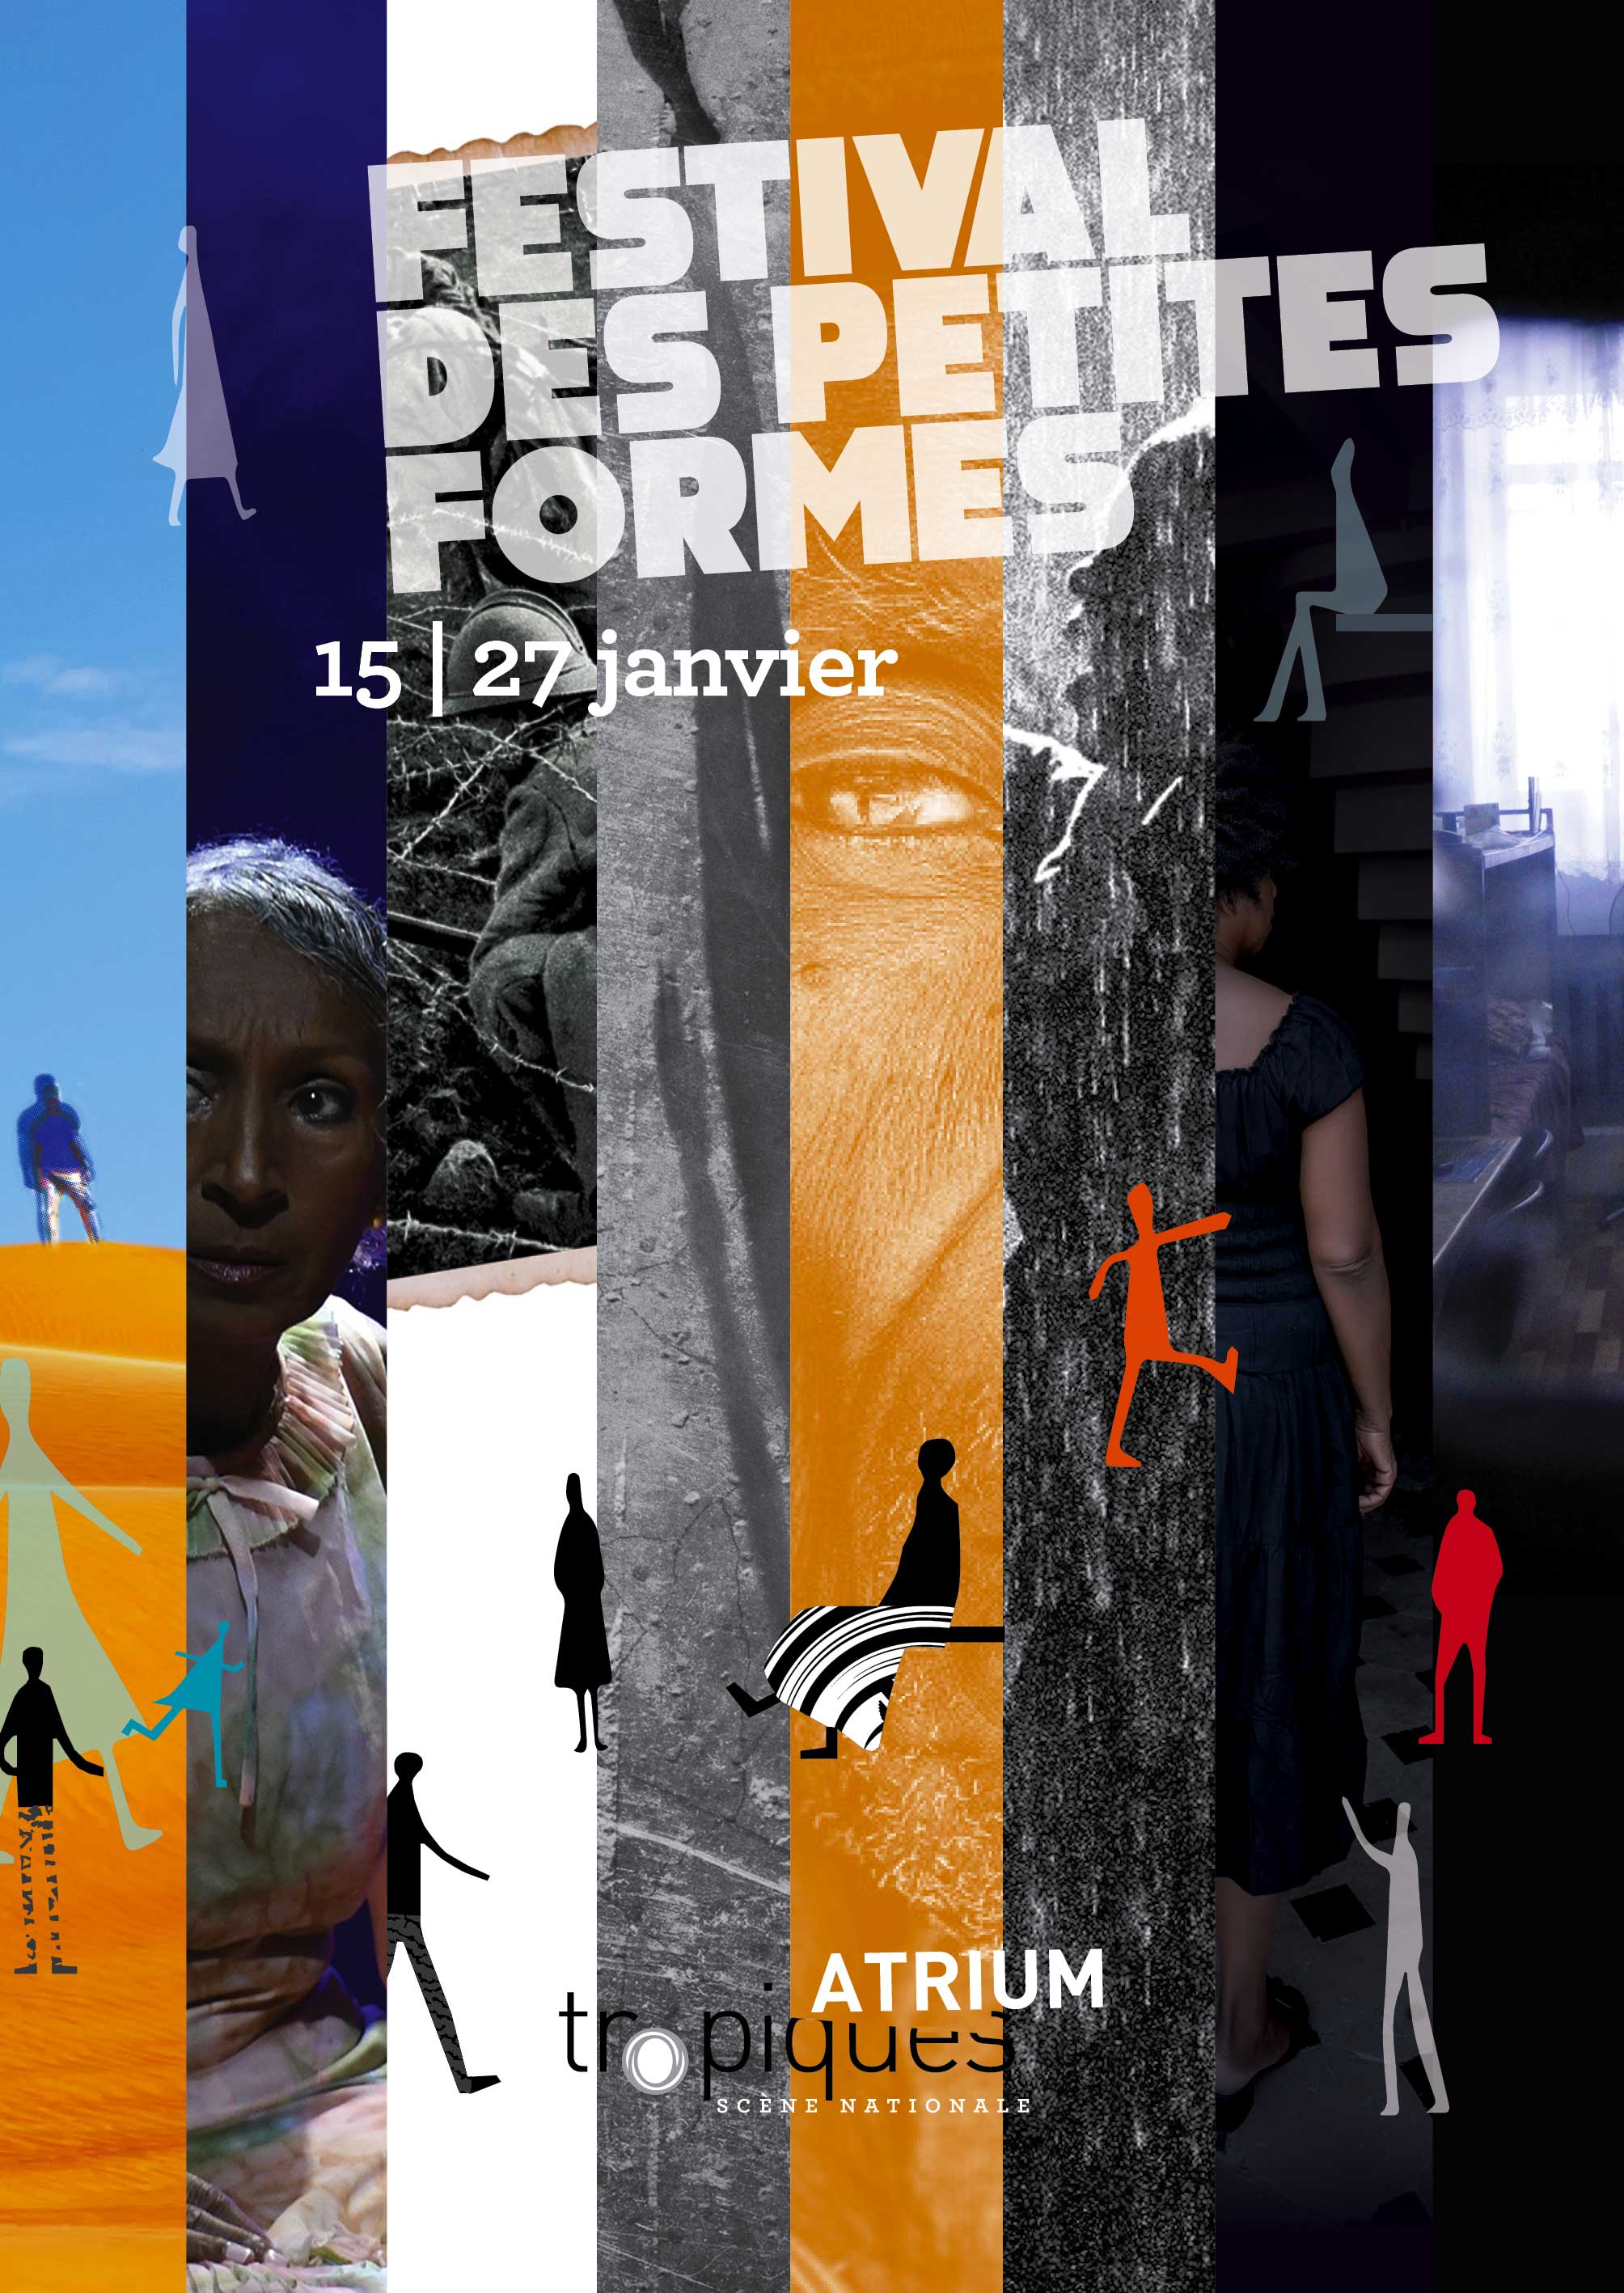 Festival des Petites Formes 2019 - Affiche Theatre Tropiques Atrium